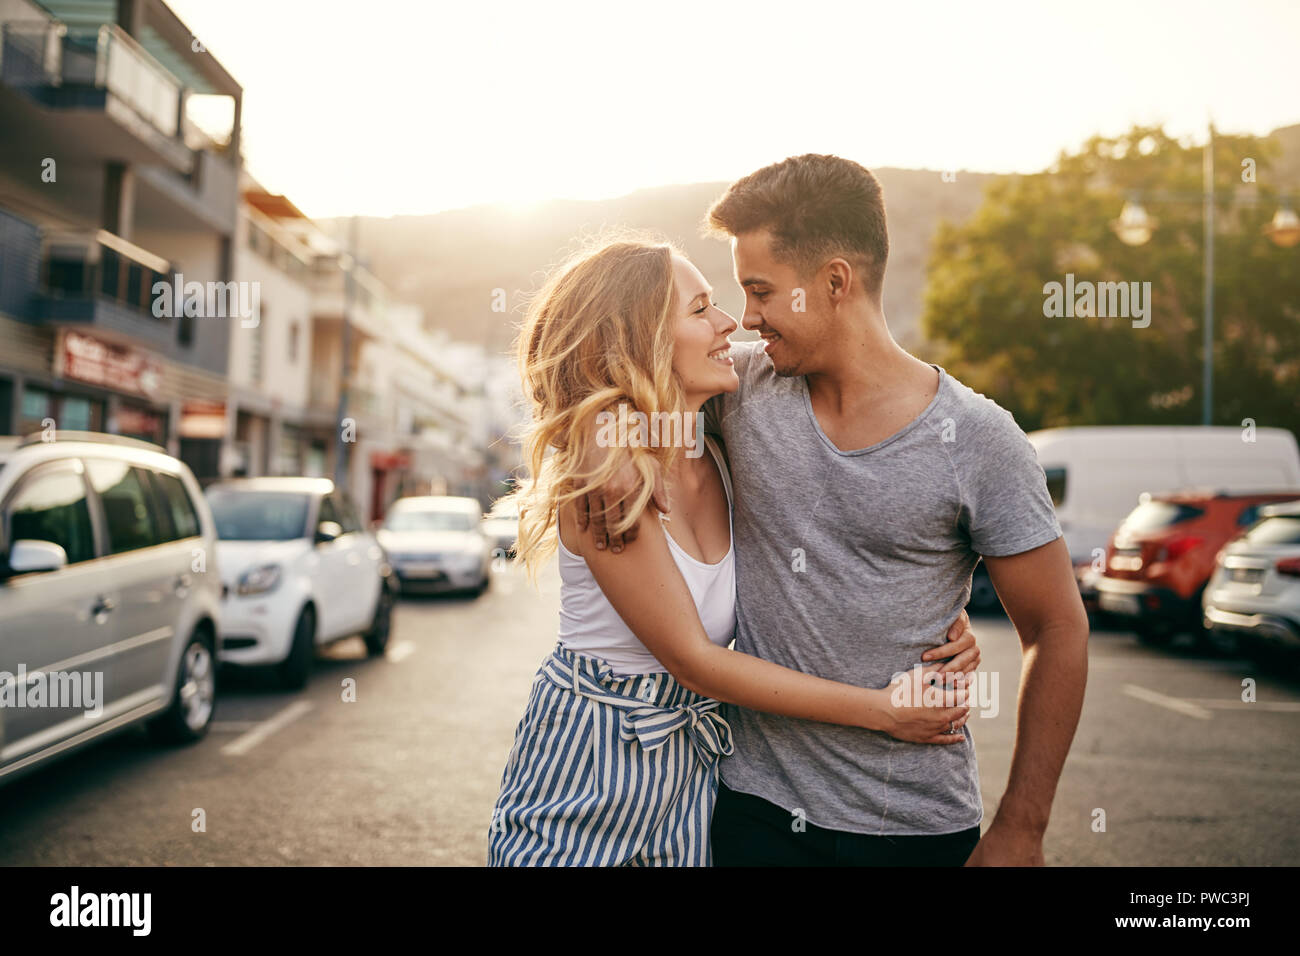 Pareja joven sonriente del brazo caminando juntos por una calle durante la puesta de sol mientras disfruta de un día juntos en la ciudad Foto de stock